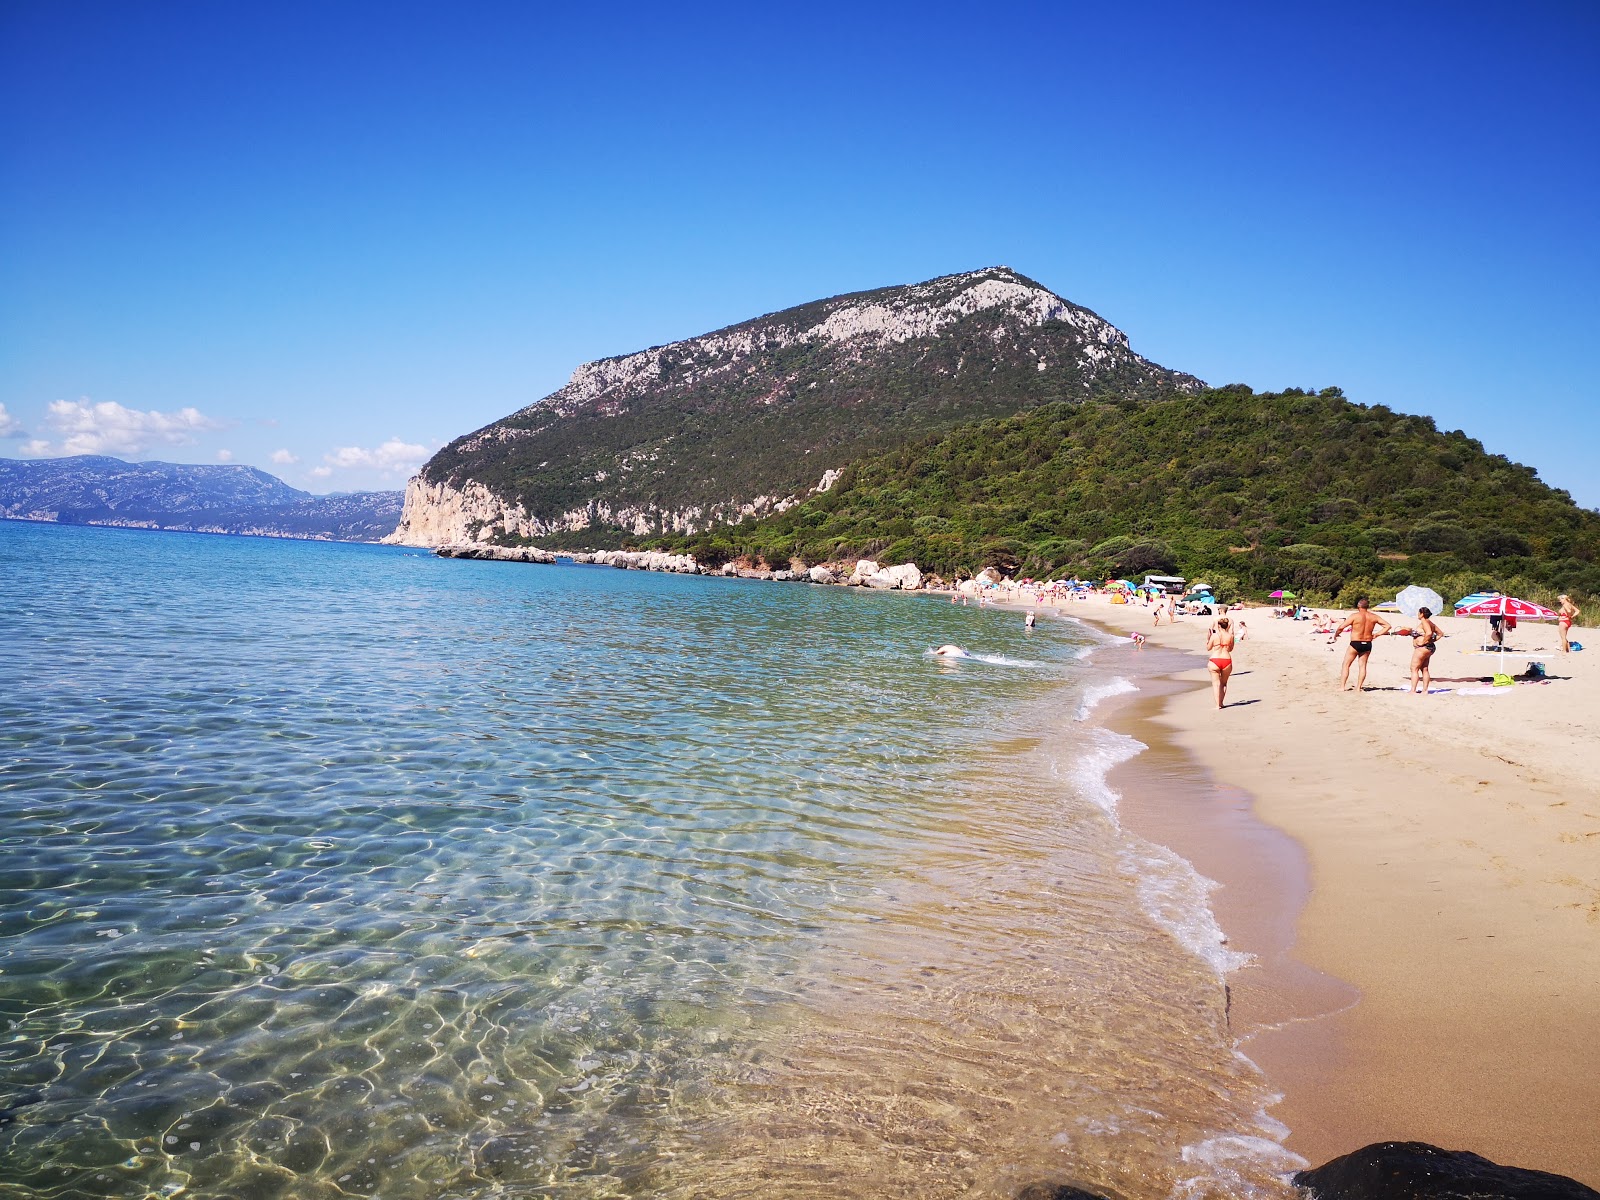 Spiaggia di Cartoe'in fotoğrafı doğal alan içinde bulunmaktadır